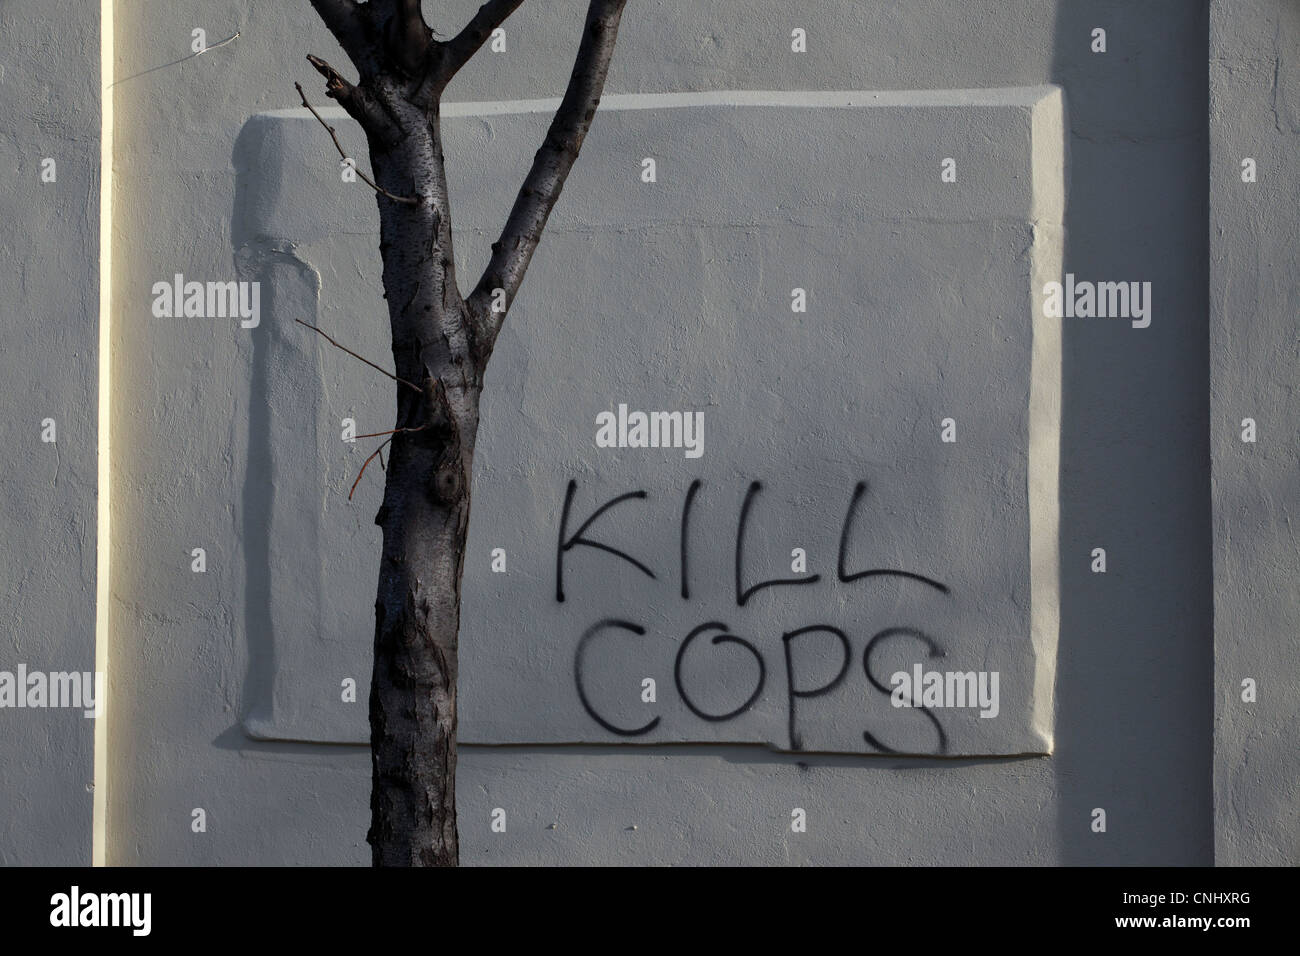 Violento odioso graffiti di incitamento alla violenza o omicidio, 'Kill Cops", scritta sul muro in Williamsburg, Brooklyn, New York, Stati Uniti d'America Foto Stock